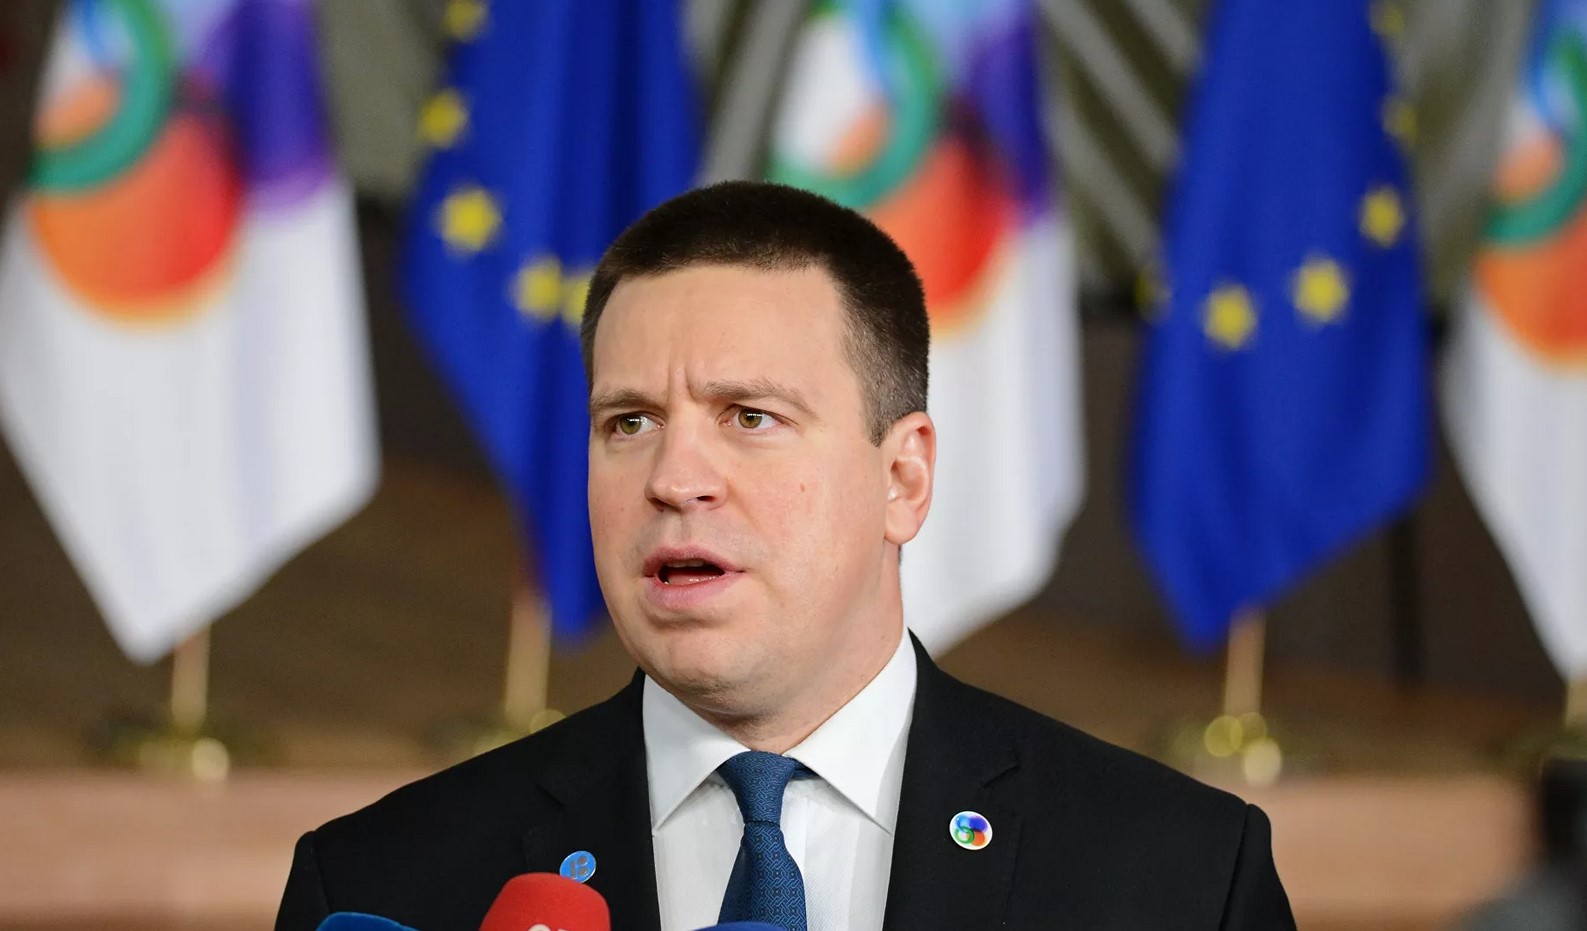 Премьер Эстонии объявил об отставке